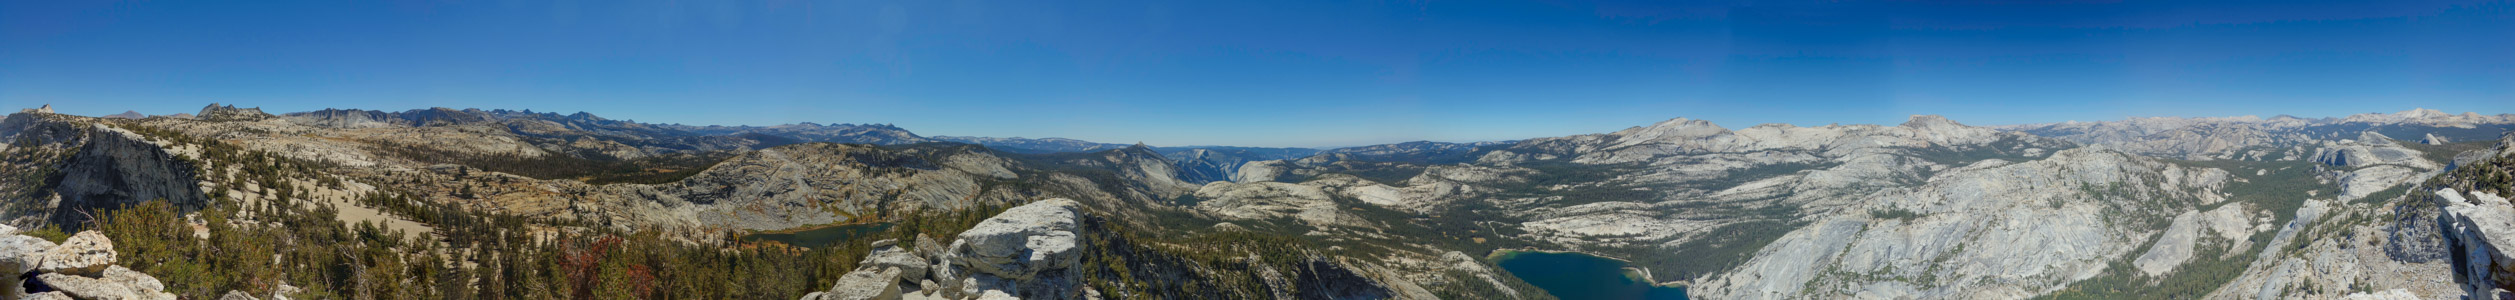 Tenaya Peak Panorama - 9/2018